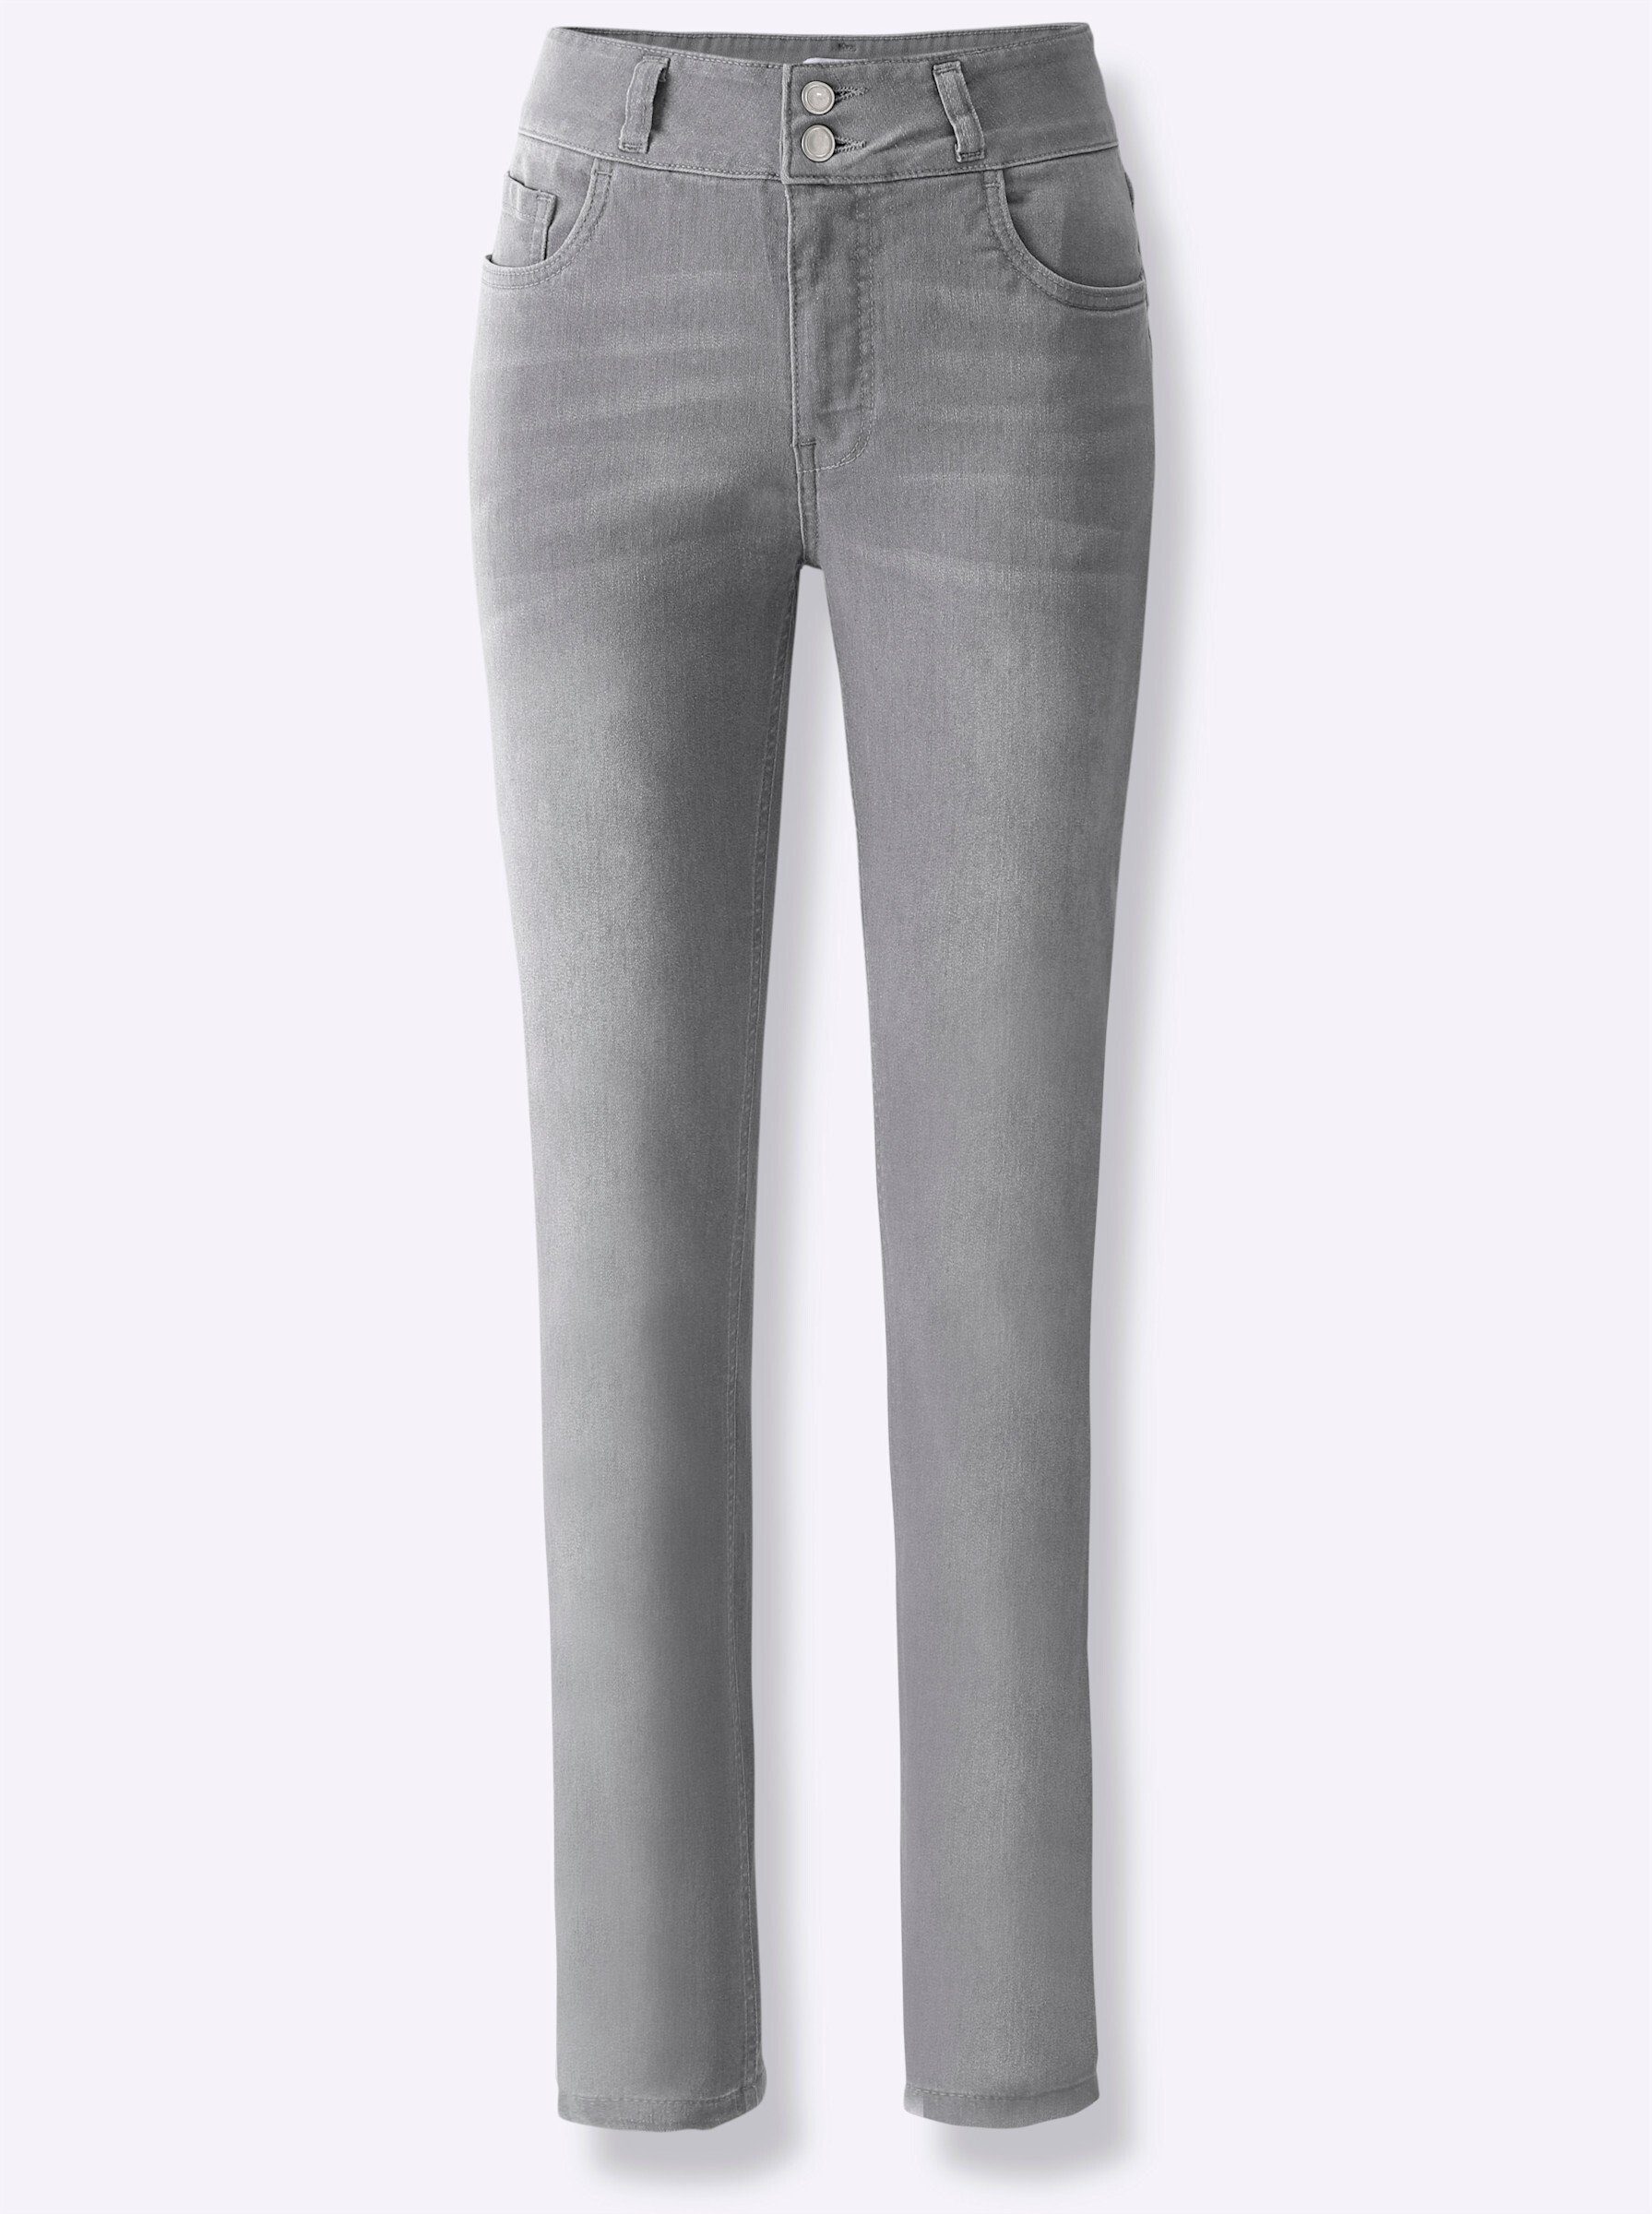 WITT grey-denim light Jeans Bequeme WEIDEN